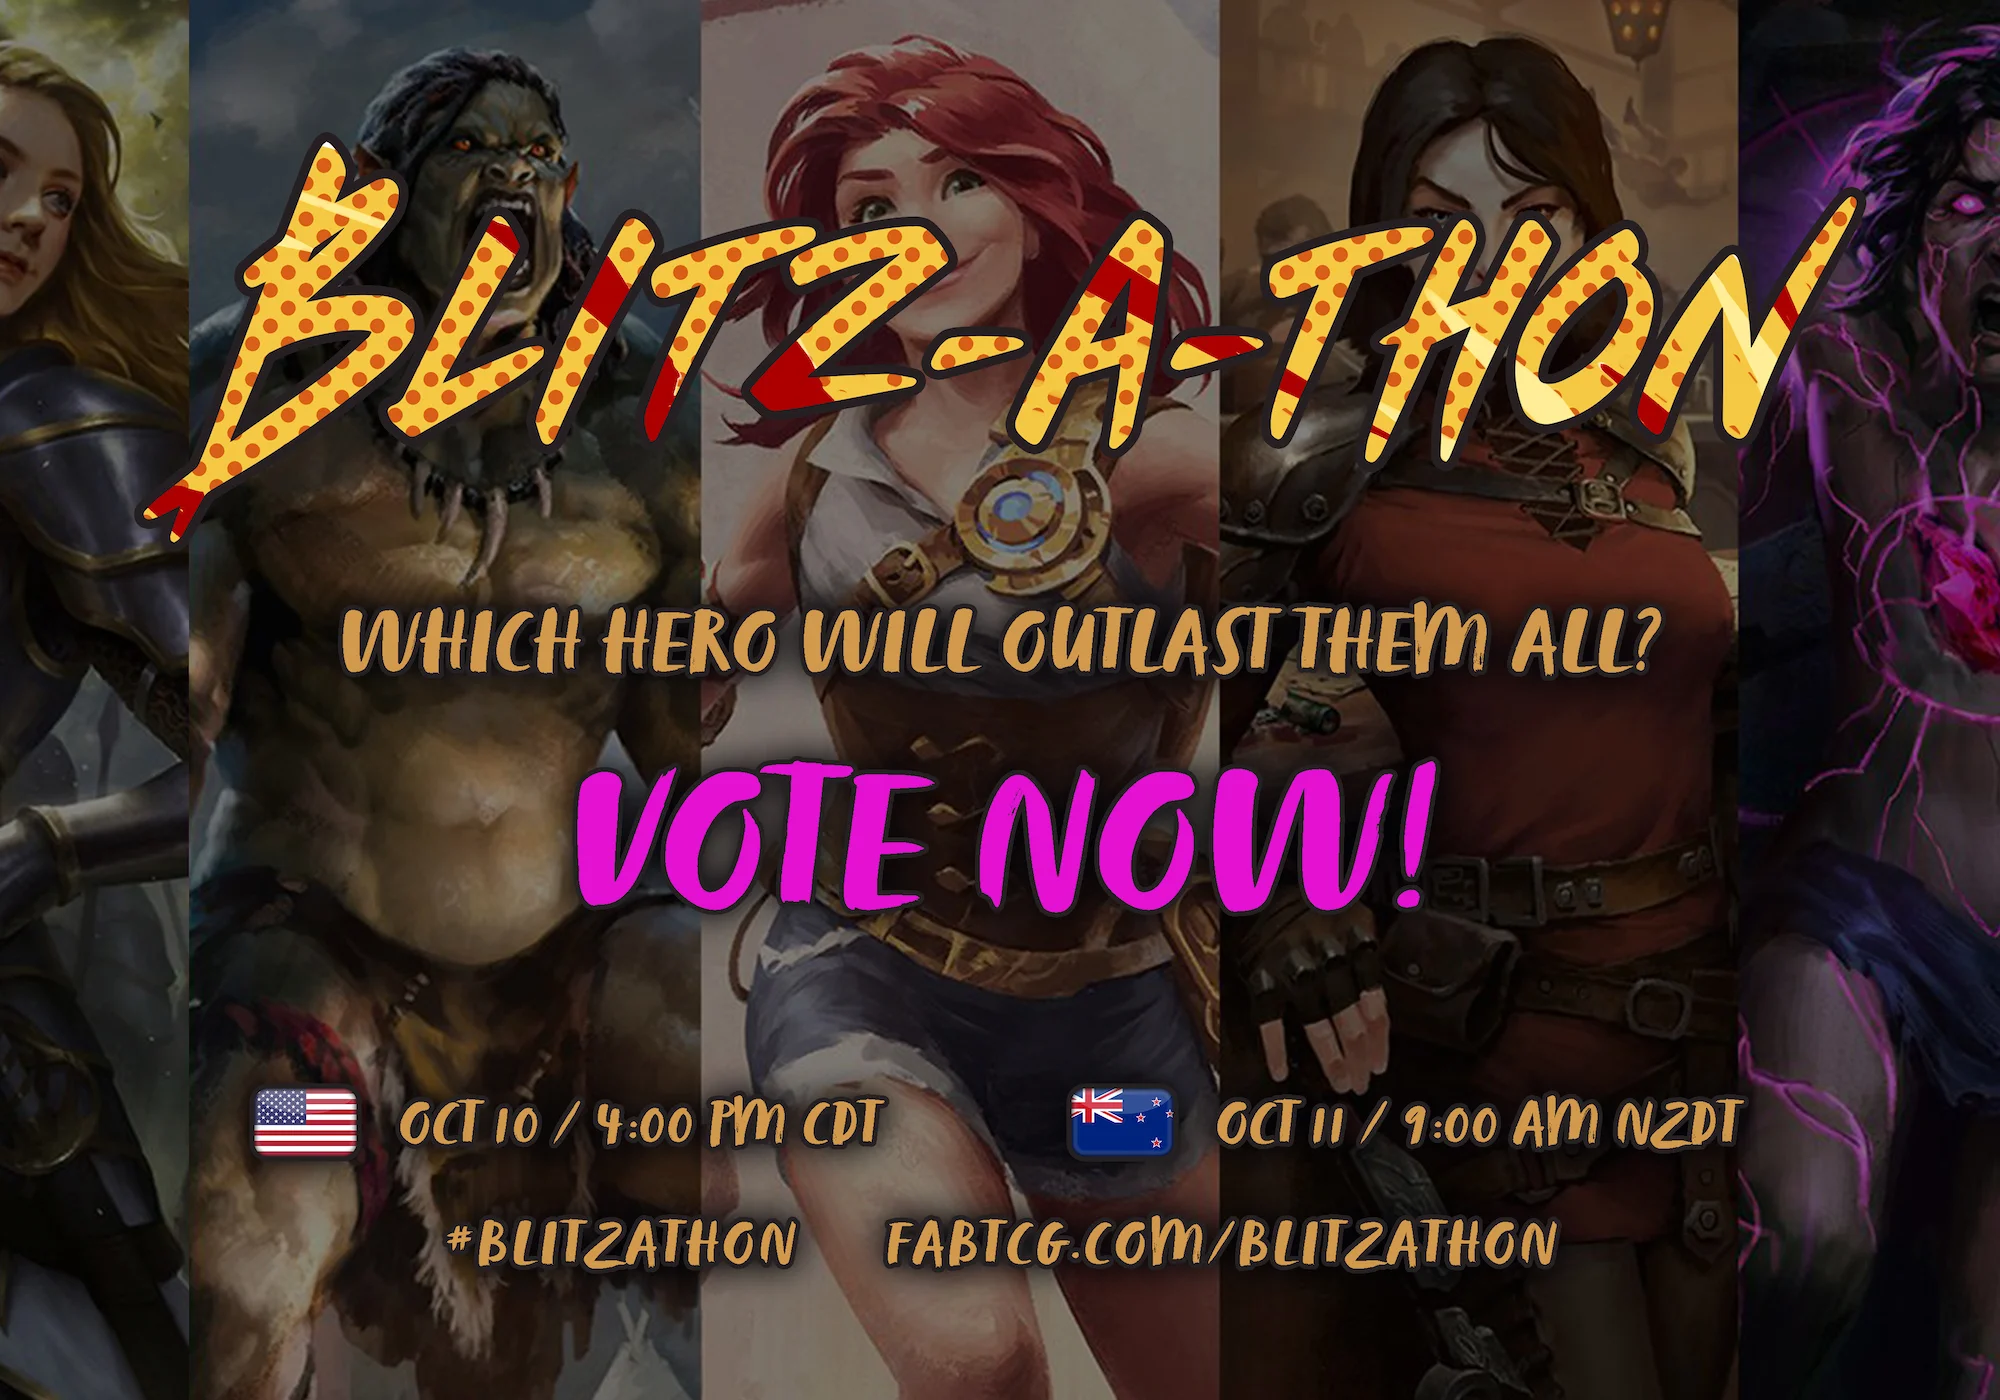 blitzathon-hero-vote